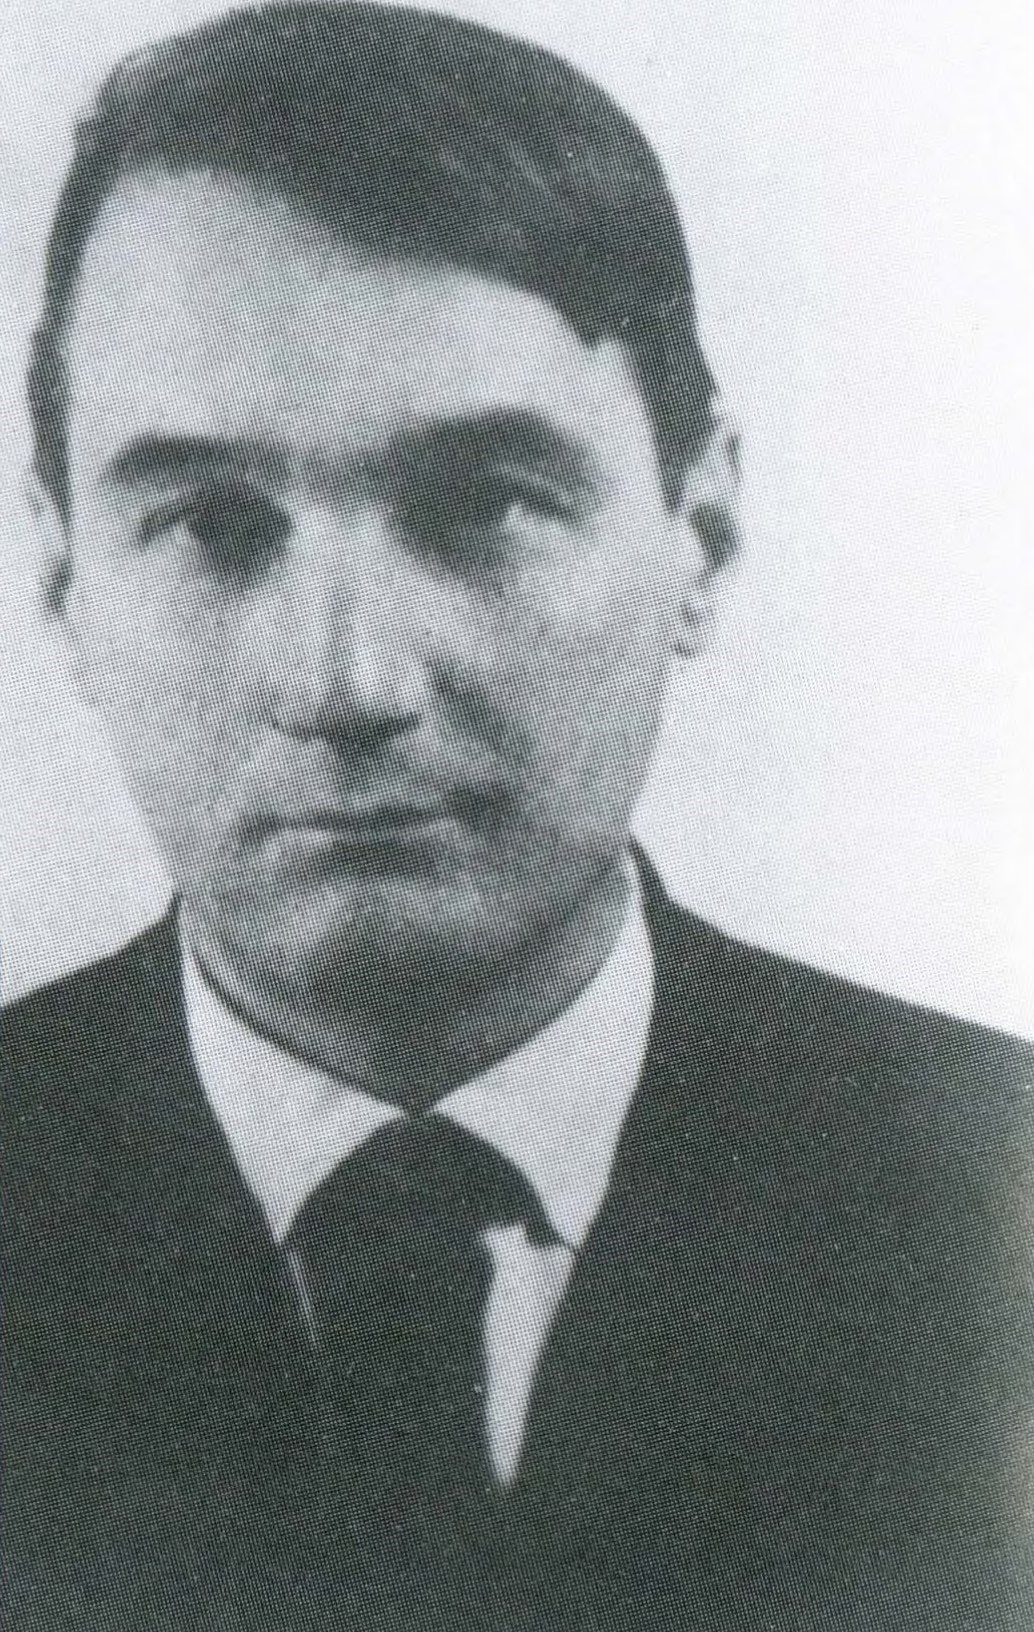 Лев Гумилёв. Одна из первых фотографий после возвращения из лагеря. 1956.